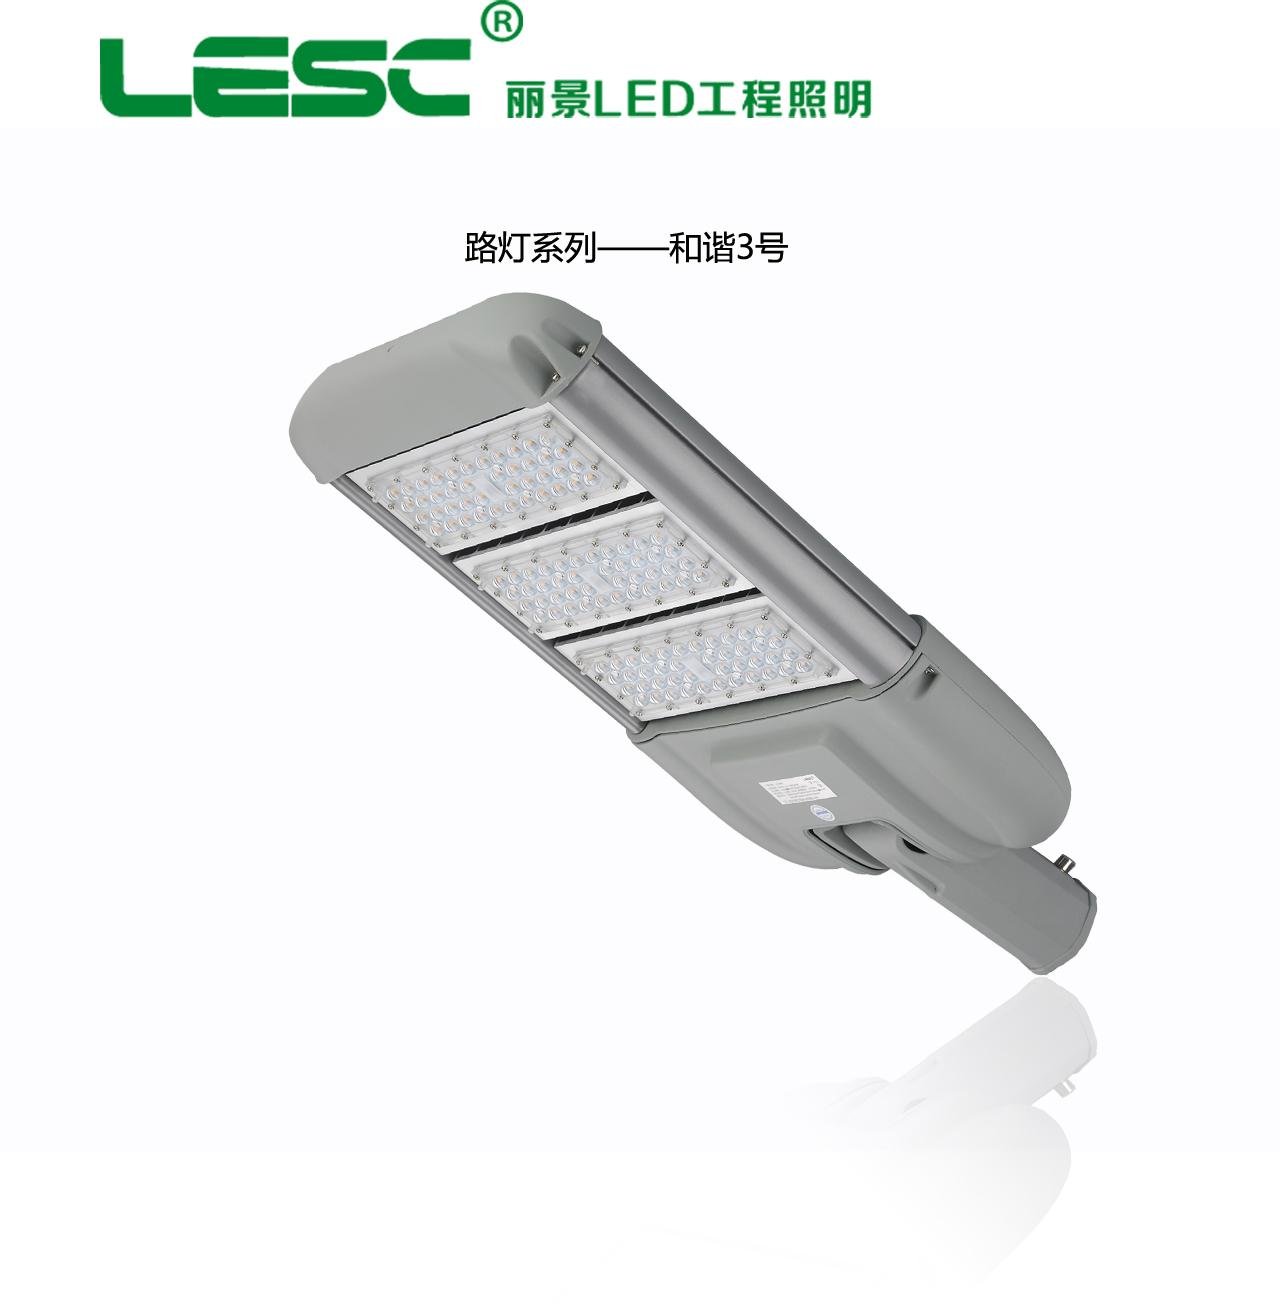 廣州智慧城市LED路燈改造工程智能路燈節能安防一體化路燈和諧三號